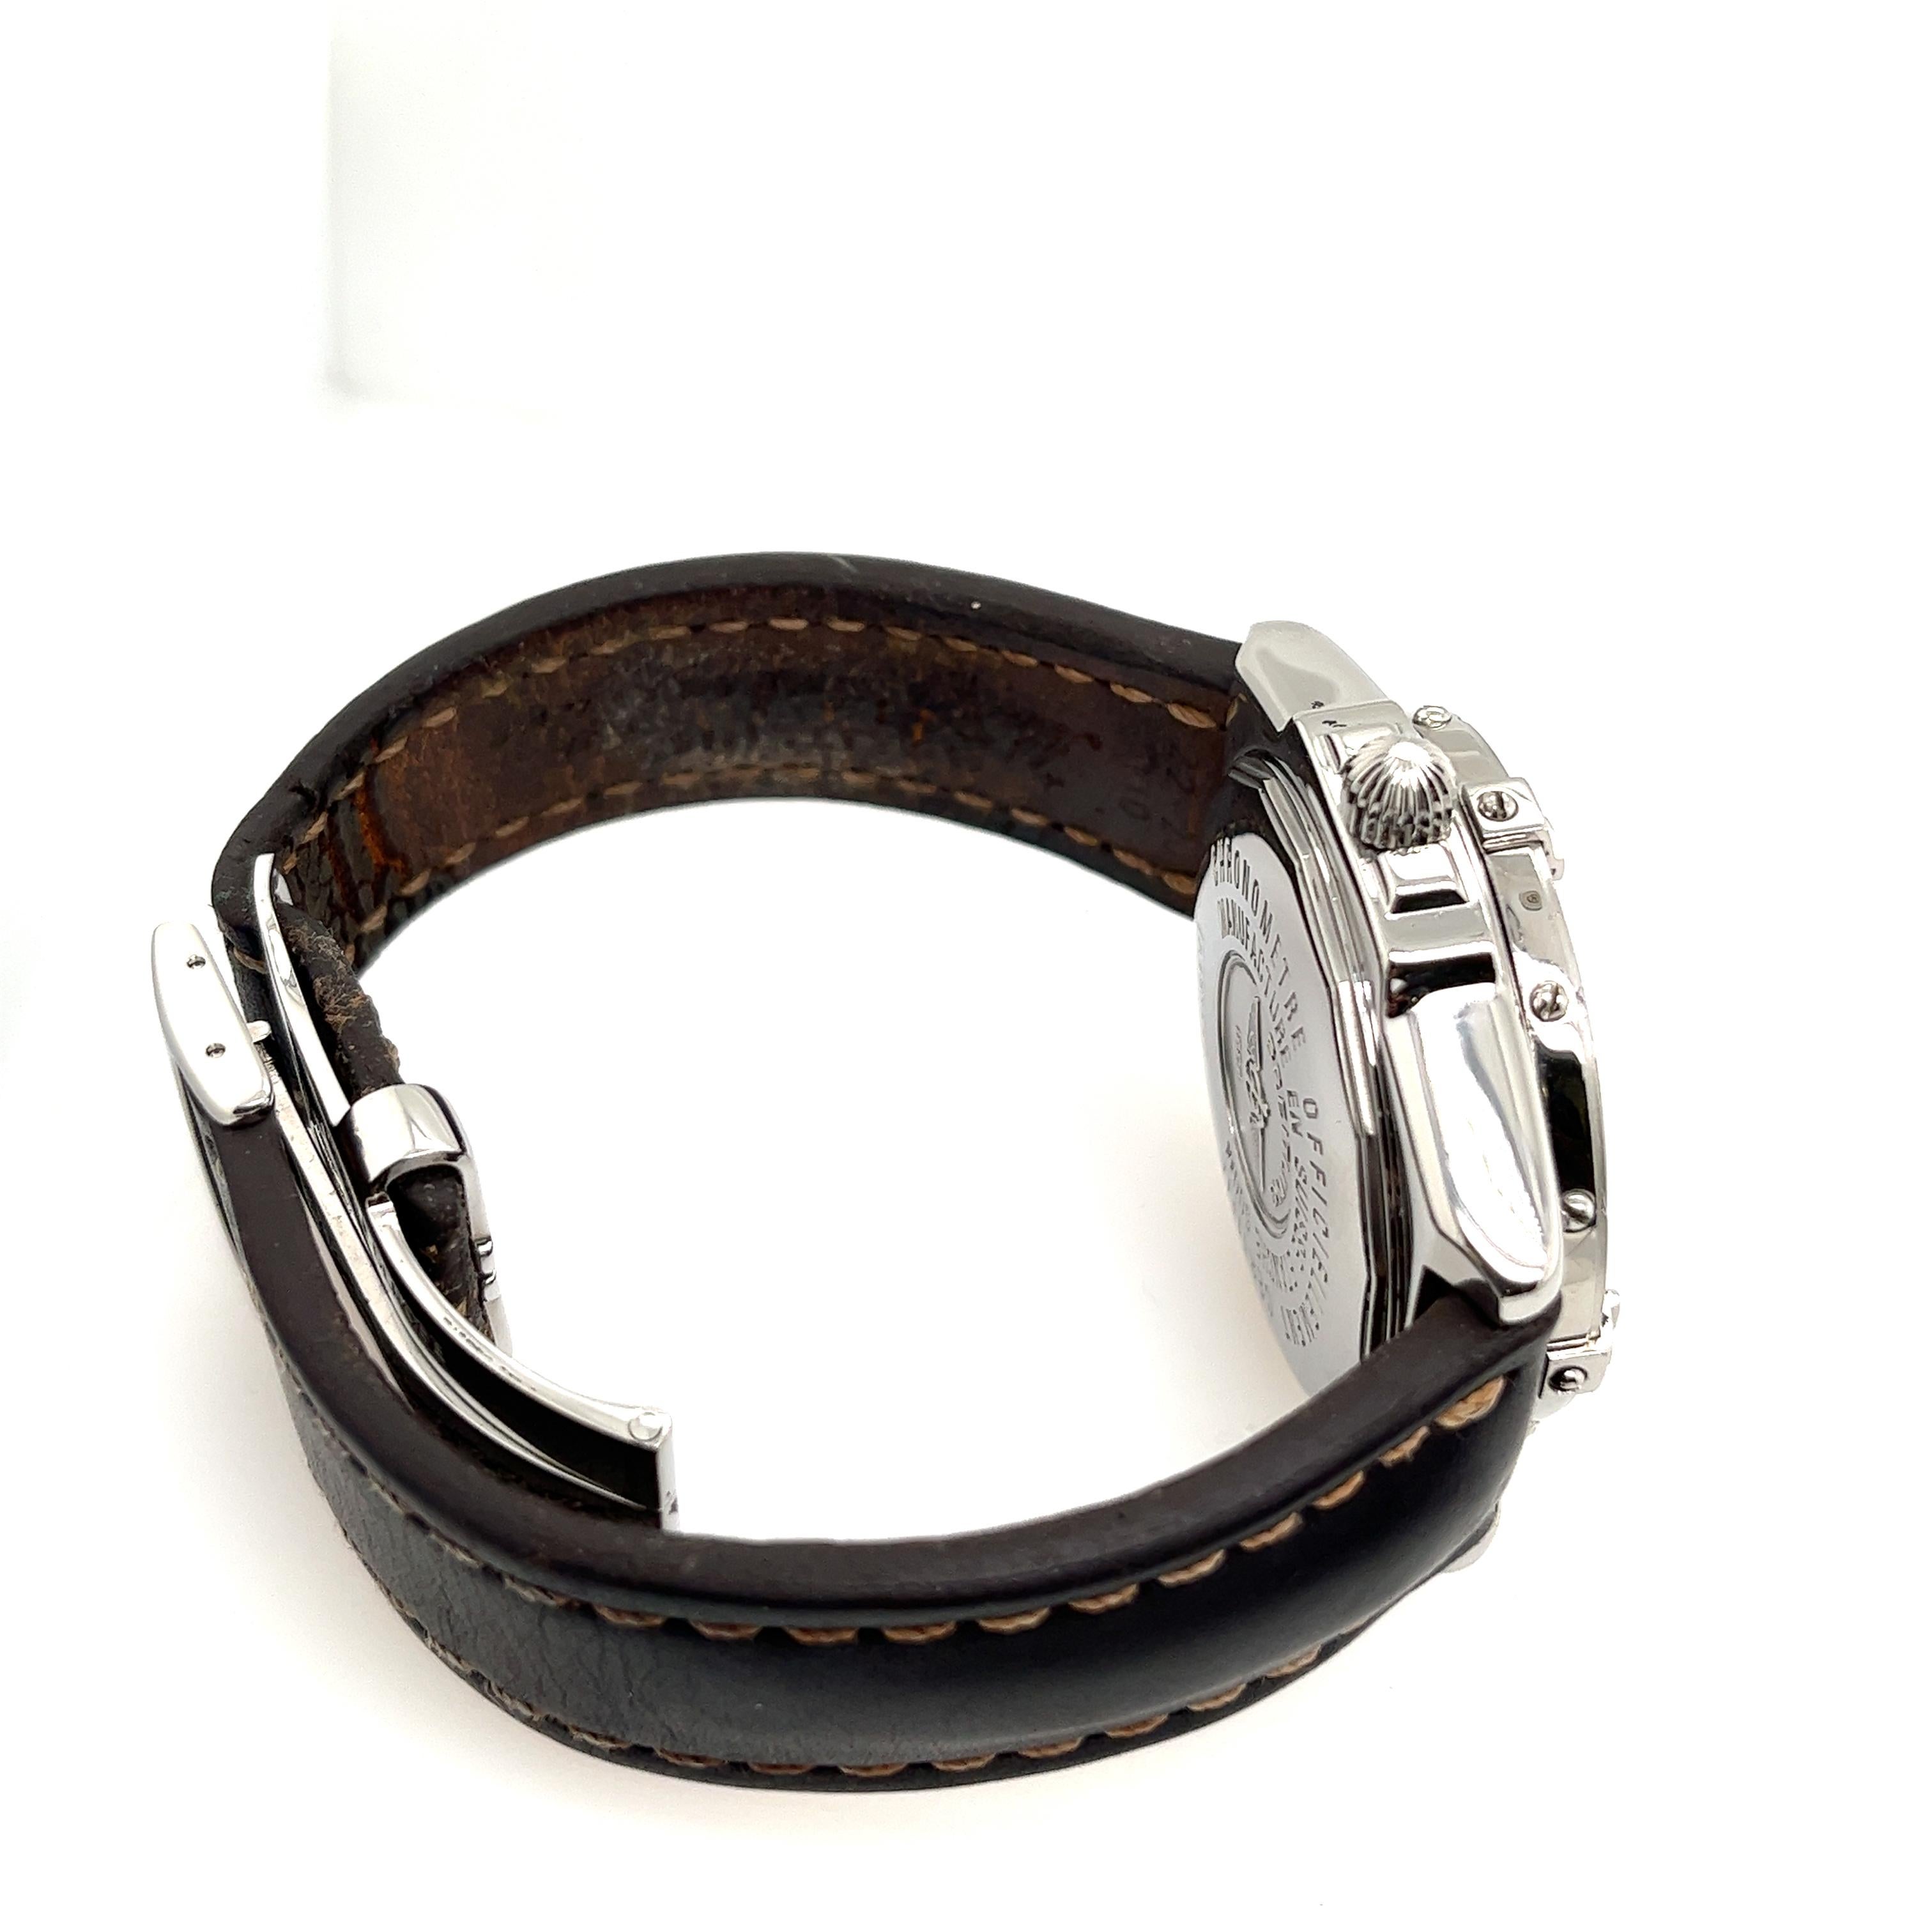 Breitling Vent contraire  Date Steel Black Dial Automatic Mens Watch A45355

Poids total de la montre : 138.1g
Numéro de série : A45355
Avec la boîte et les papiers d'origine
SMS8718